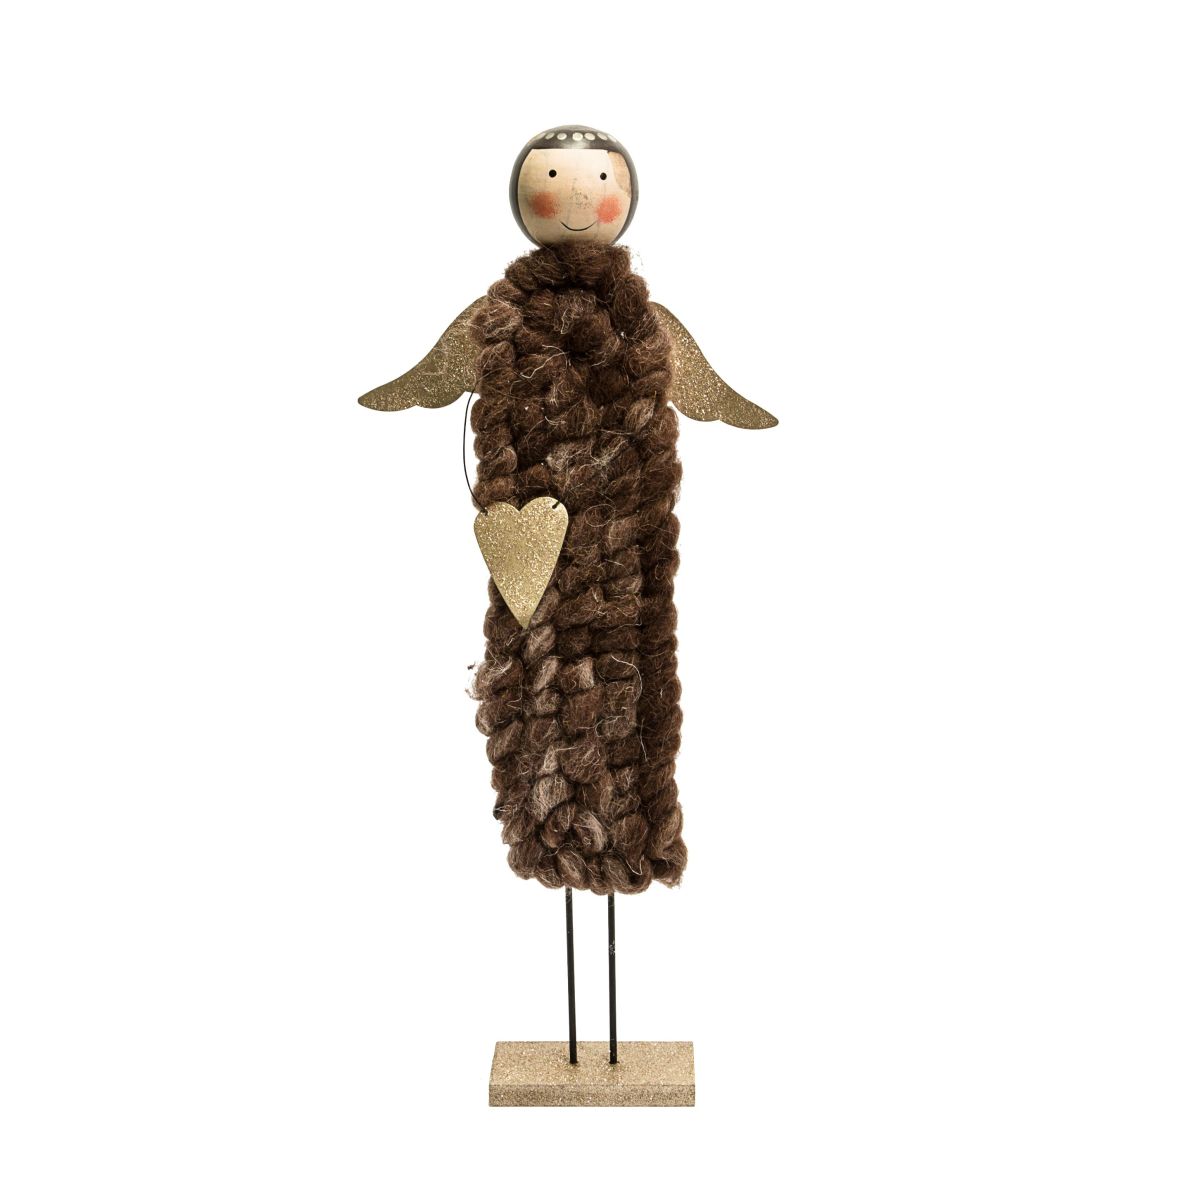 Bezaubernder Engel mit schimmernden Flügeln und Herz. Maße: ca. 52 cm hoch, Gewicht: ca. 0,7 kg, Material: MDF, Wolle.<br>